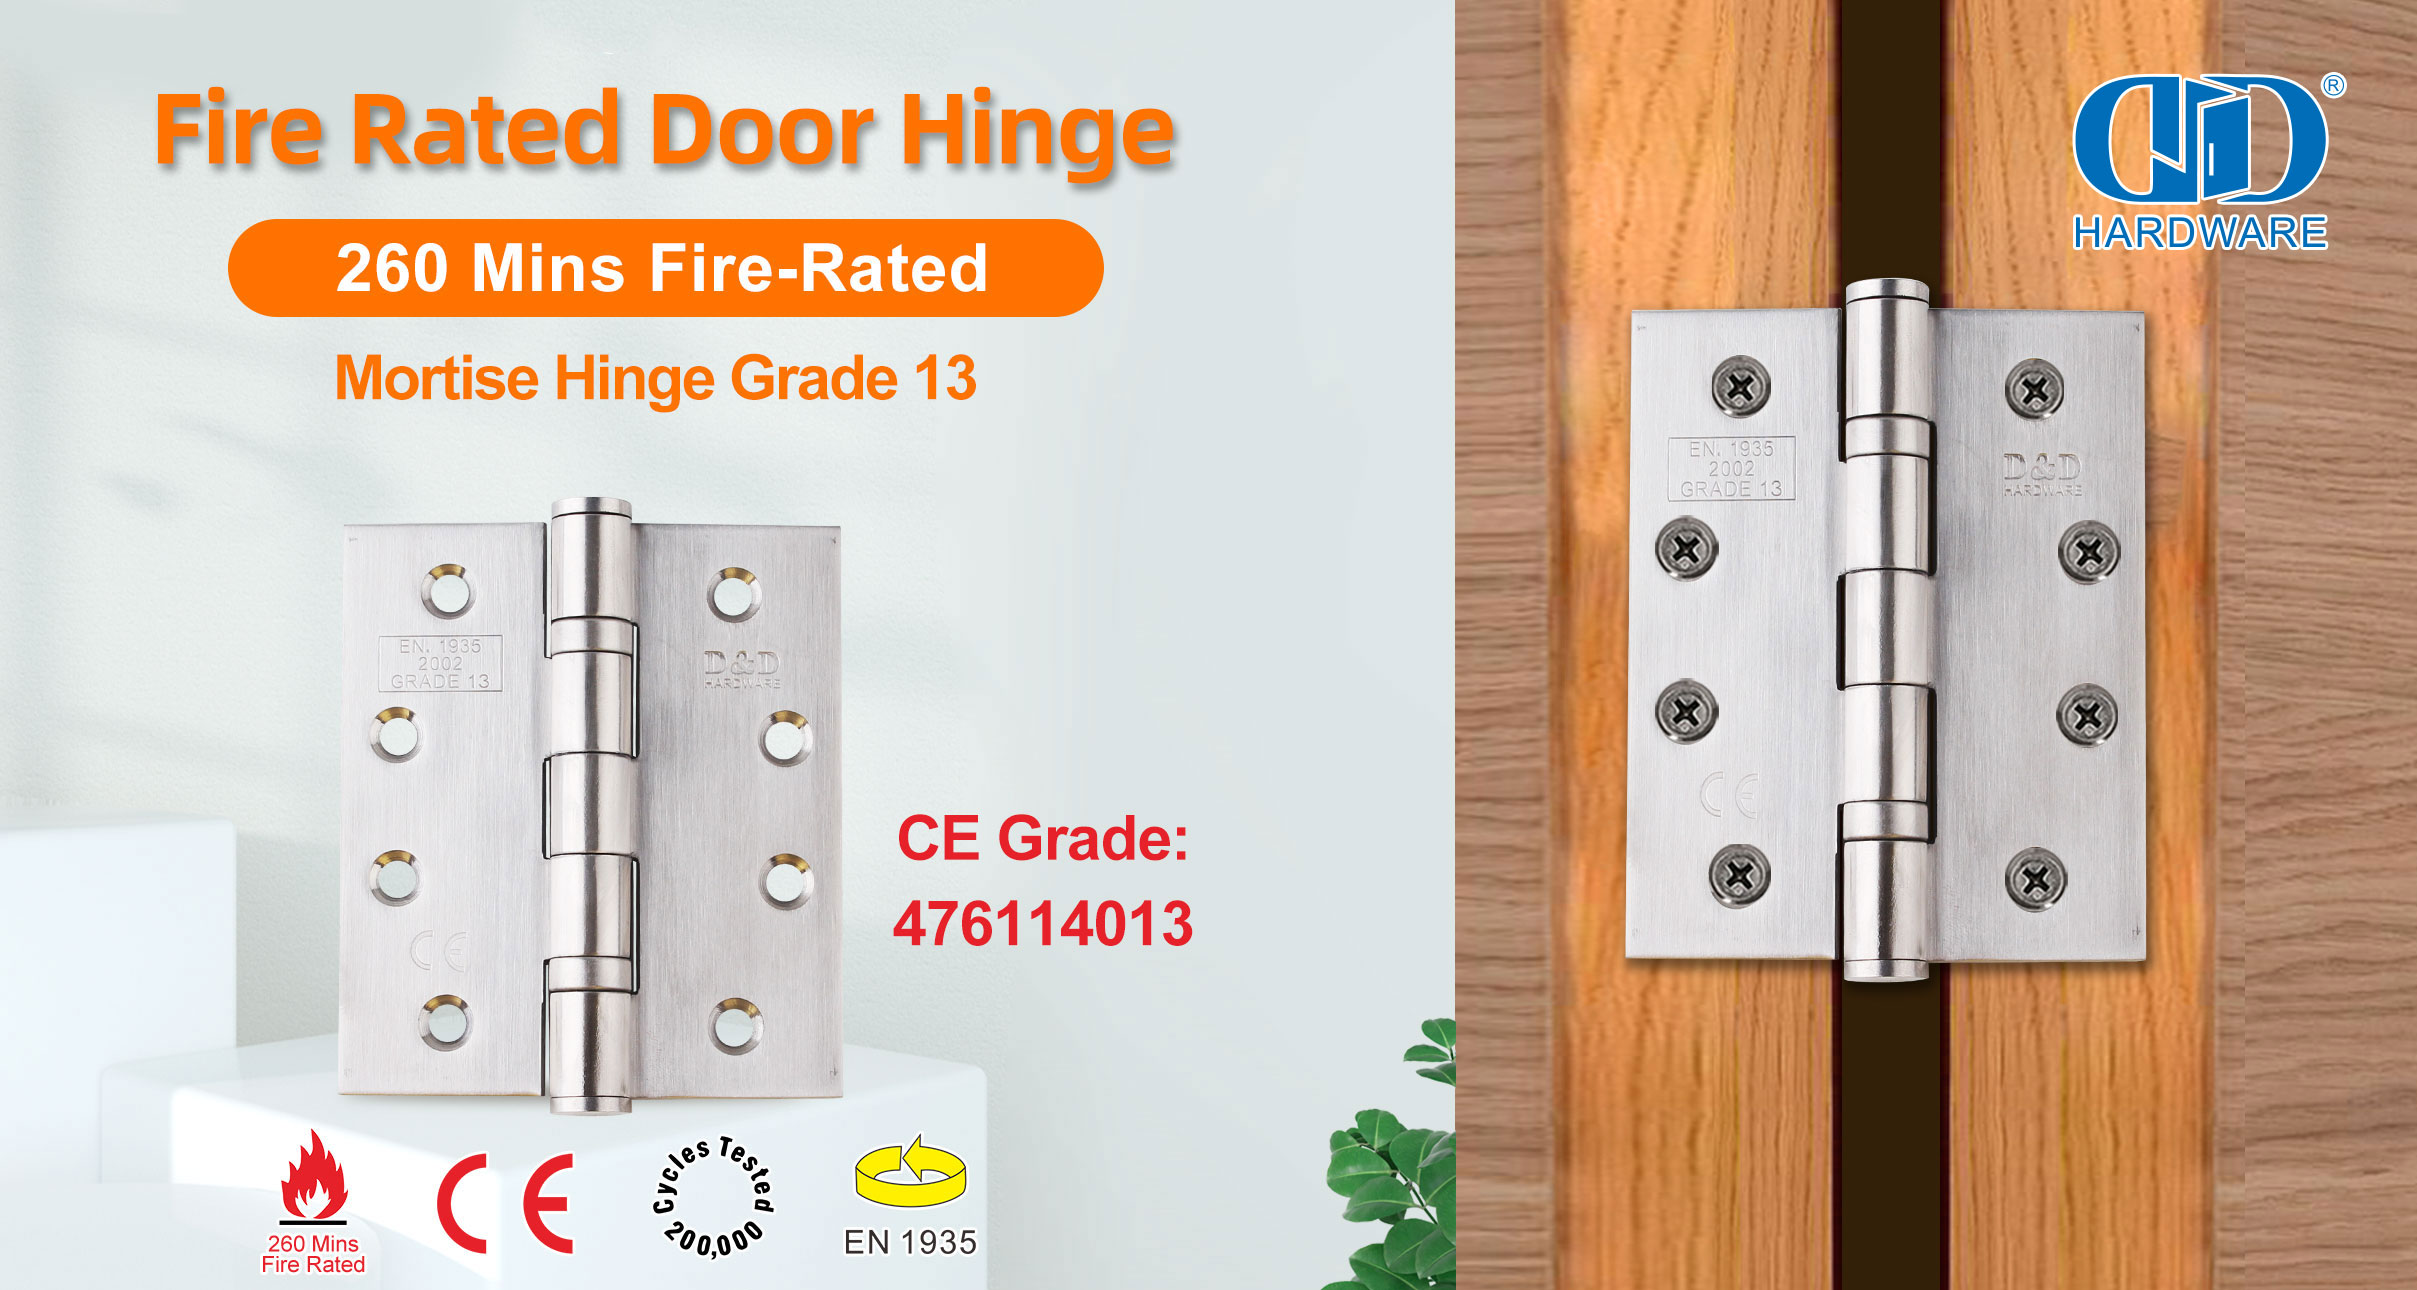 Hinge for Fire Proof Door is CE certified